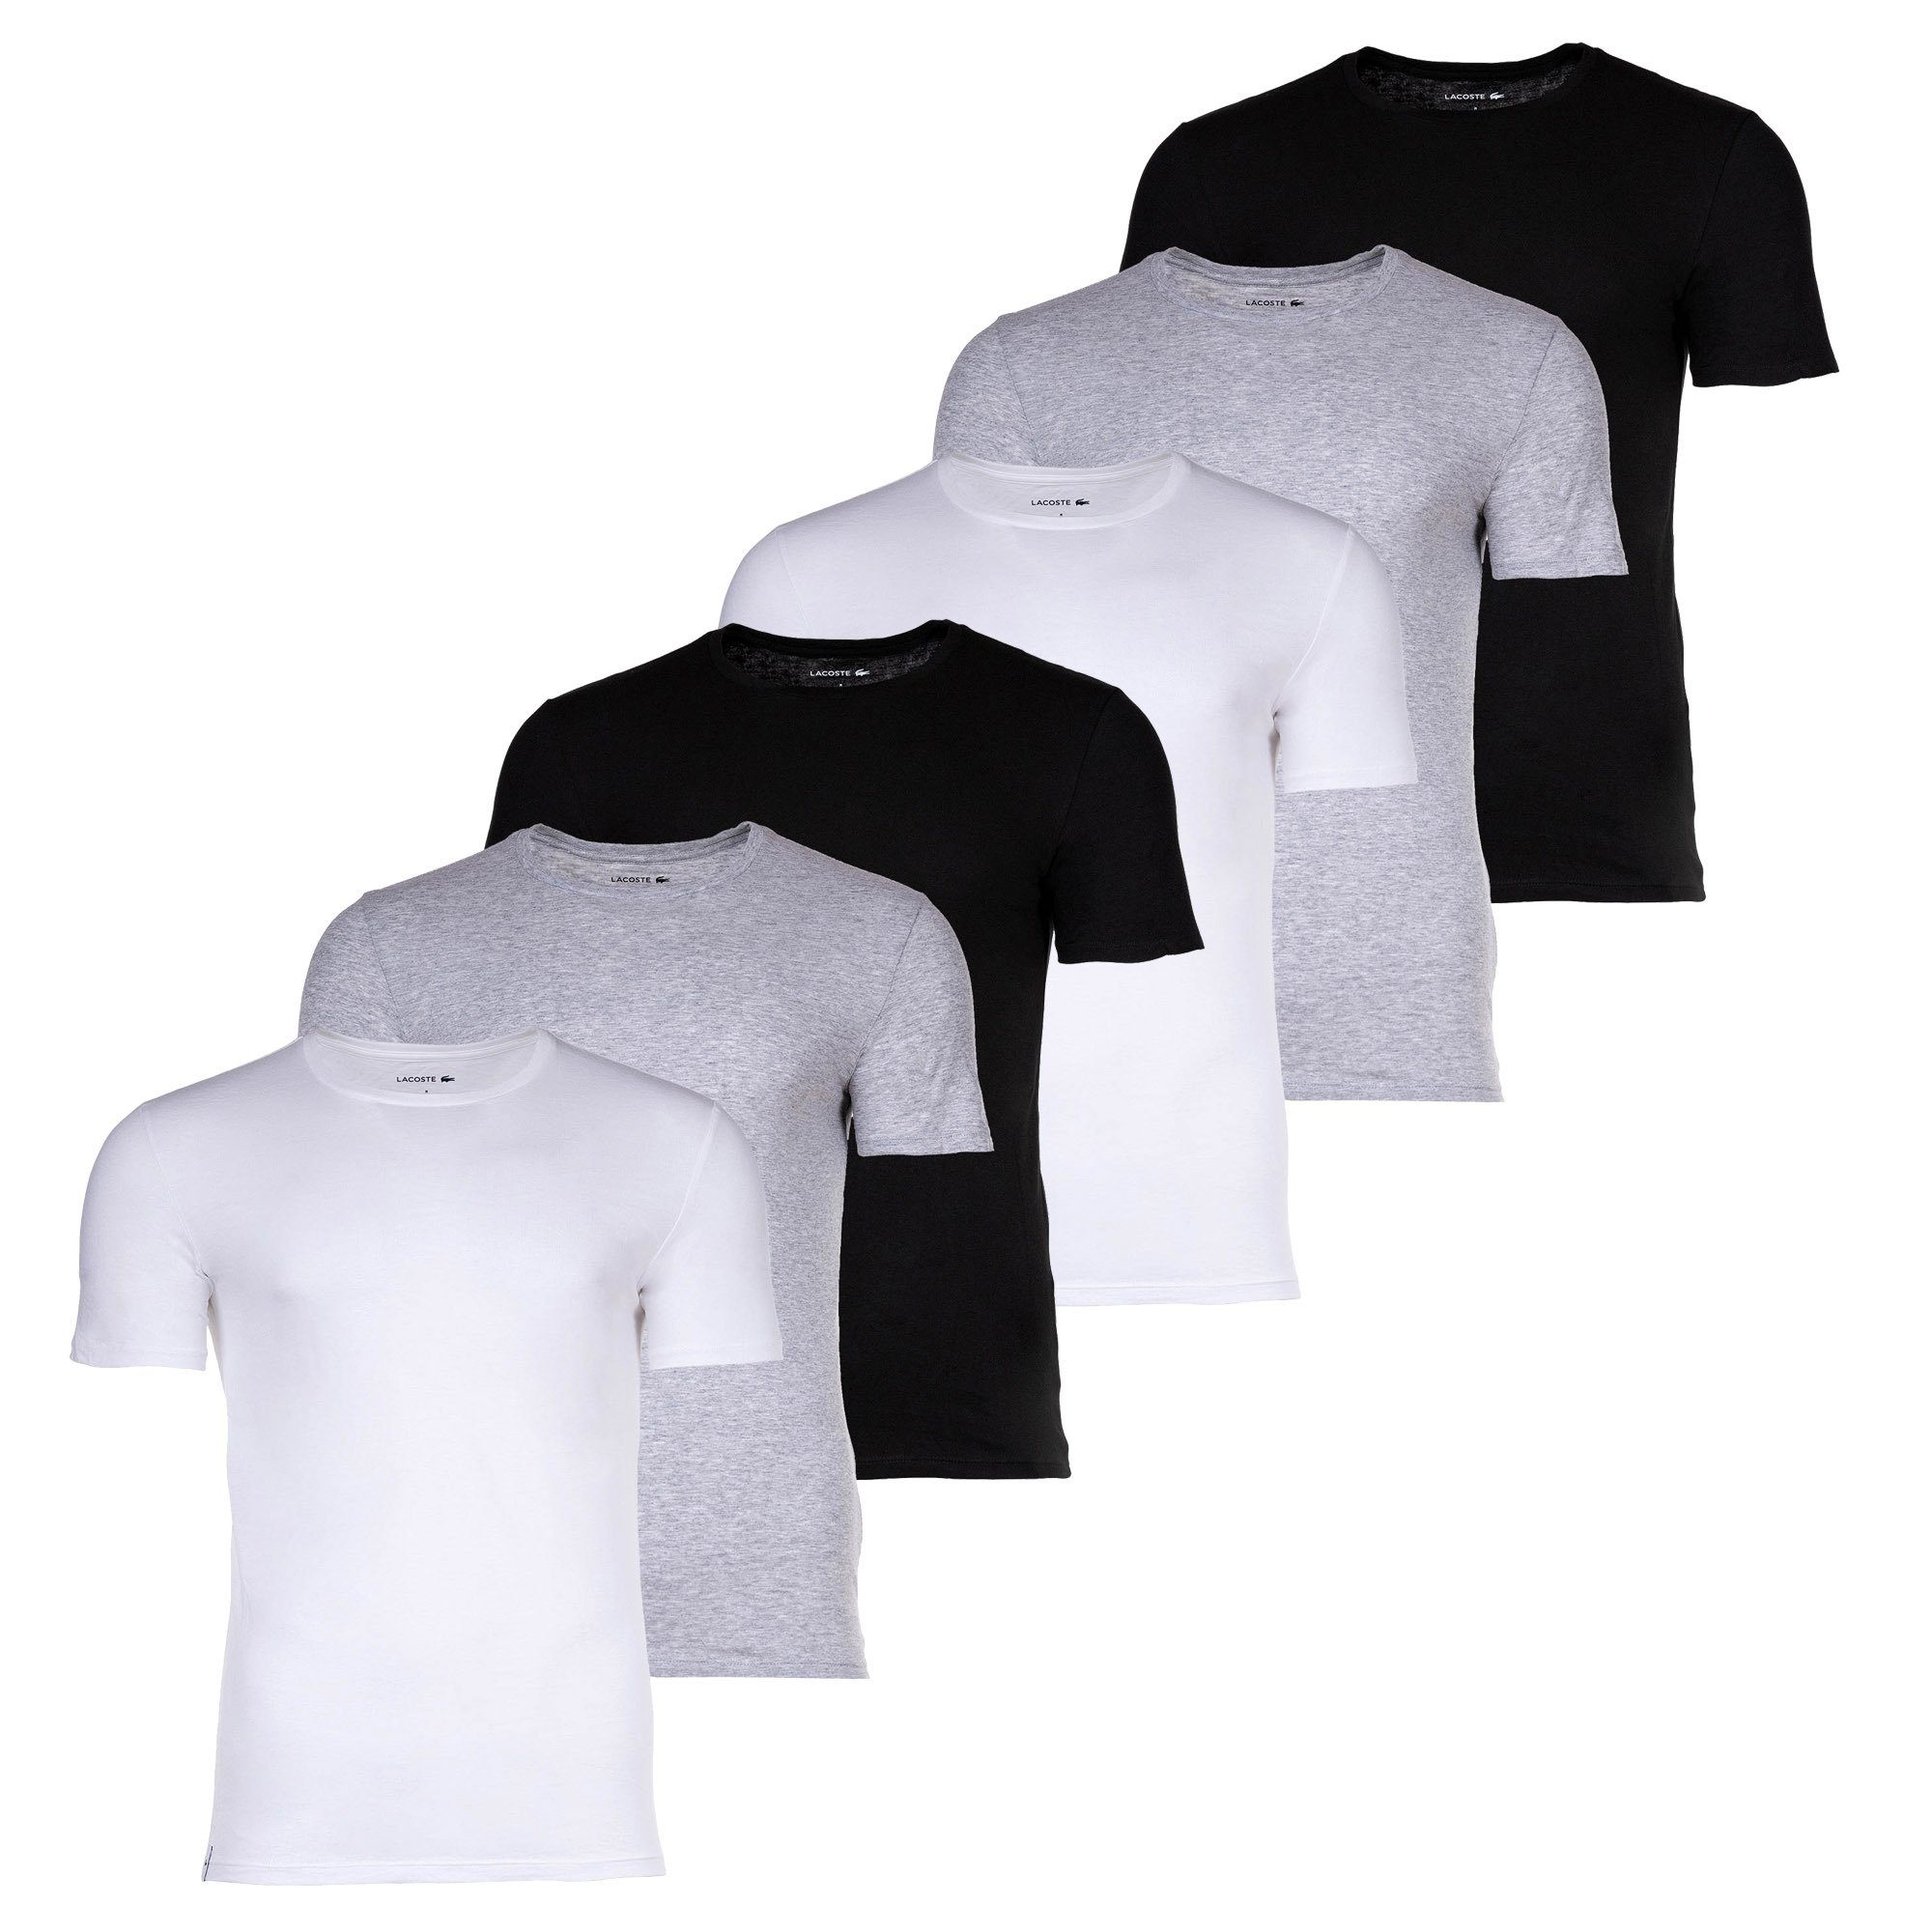 Lacoste T-Shirt Herren T-Shirts, 6er Pack - Essentials, Rundhals Weiß/Grau/Schwarz